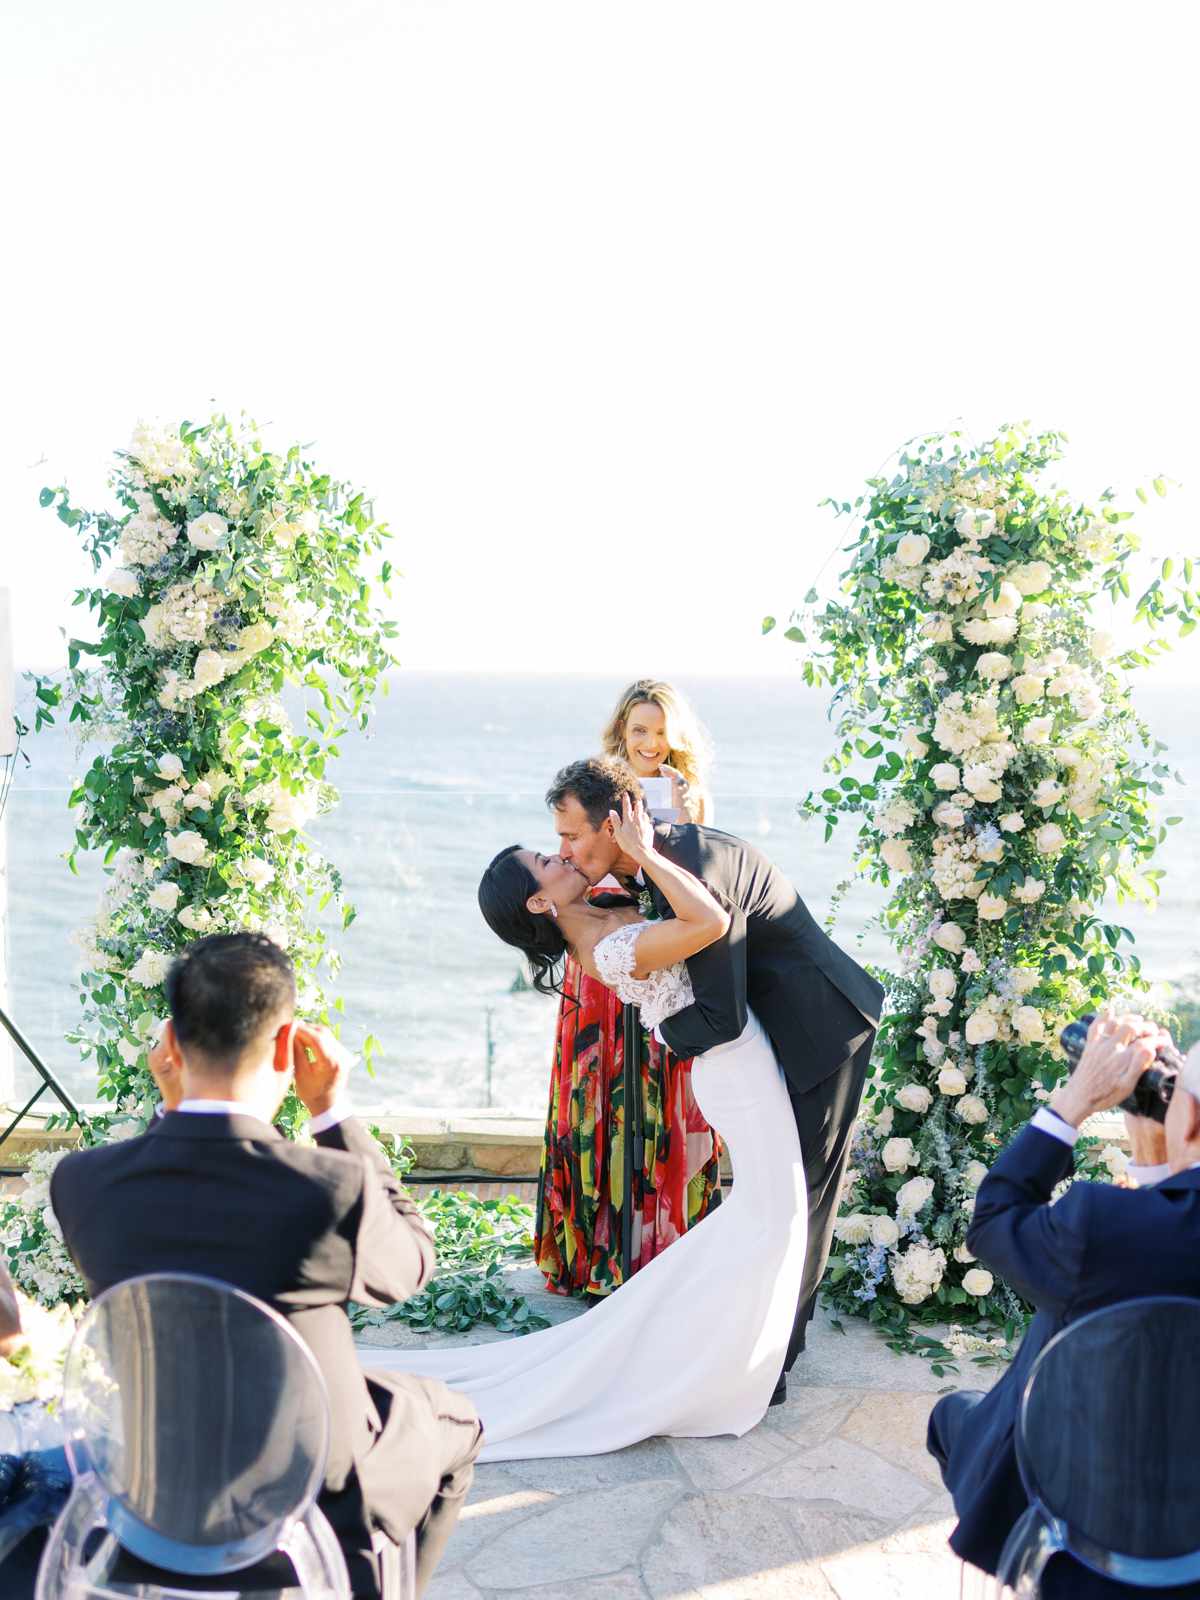 bettina gino wedding ceremony kiss overlooking water